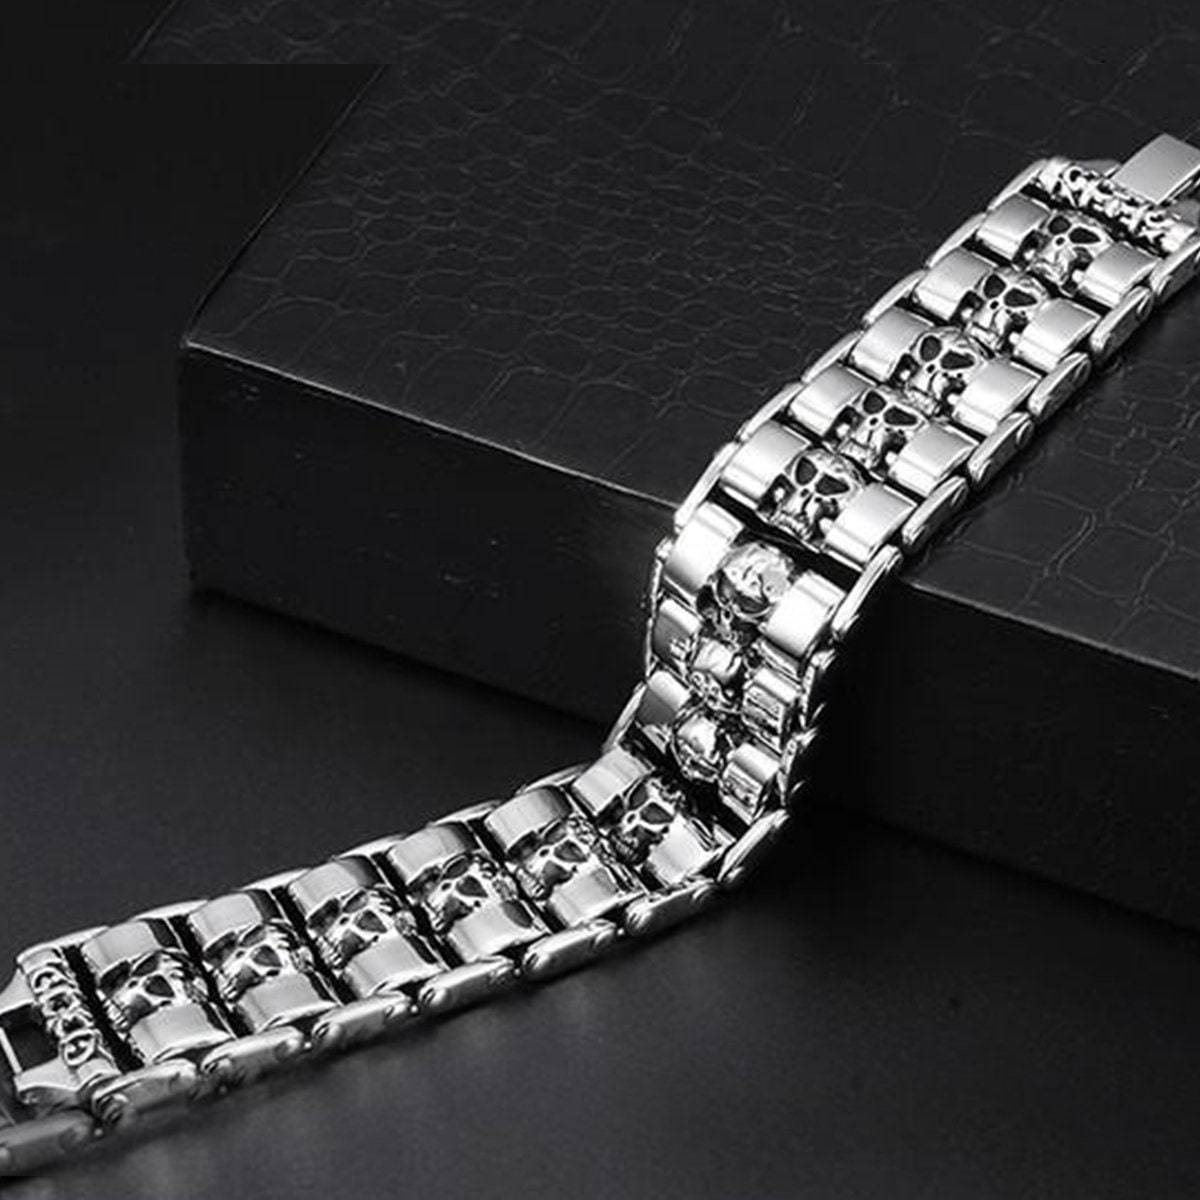 Stainless Steel Fashion Wide Skull Bracelet, 8.3 x 0.9 in